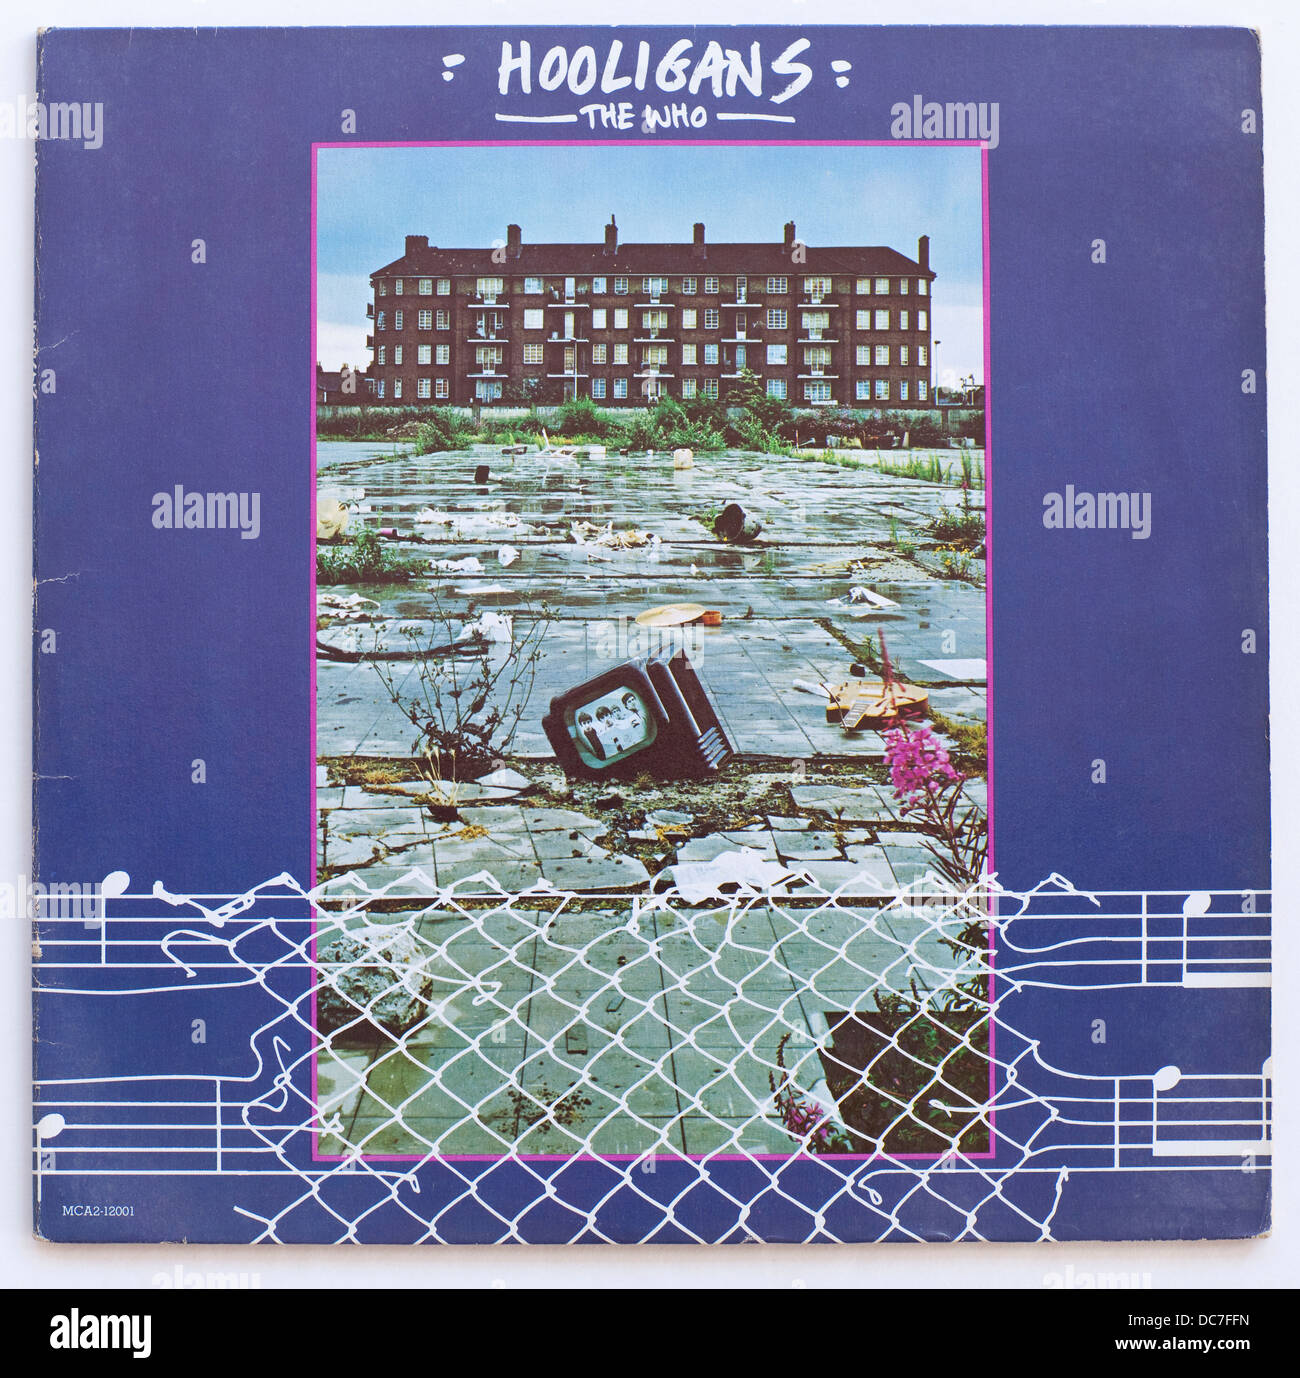 L'OMS - hooligans, album de compilation 1979 sur MCA Records - usage éditorial uniquement Banque D'Images